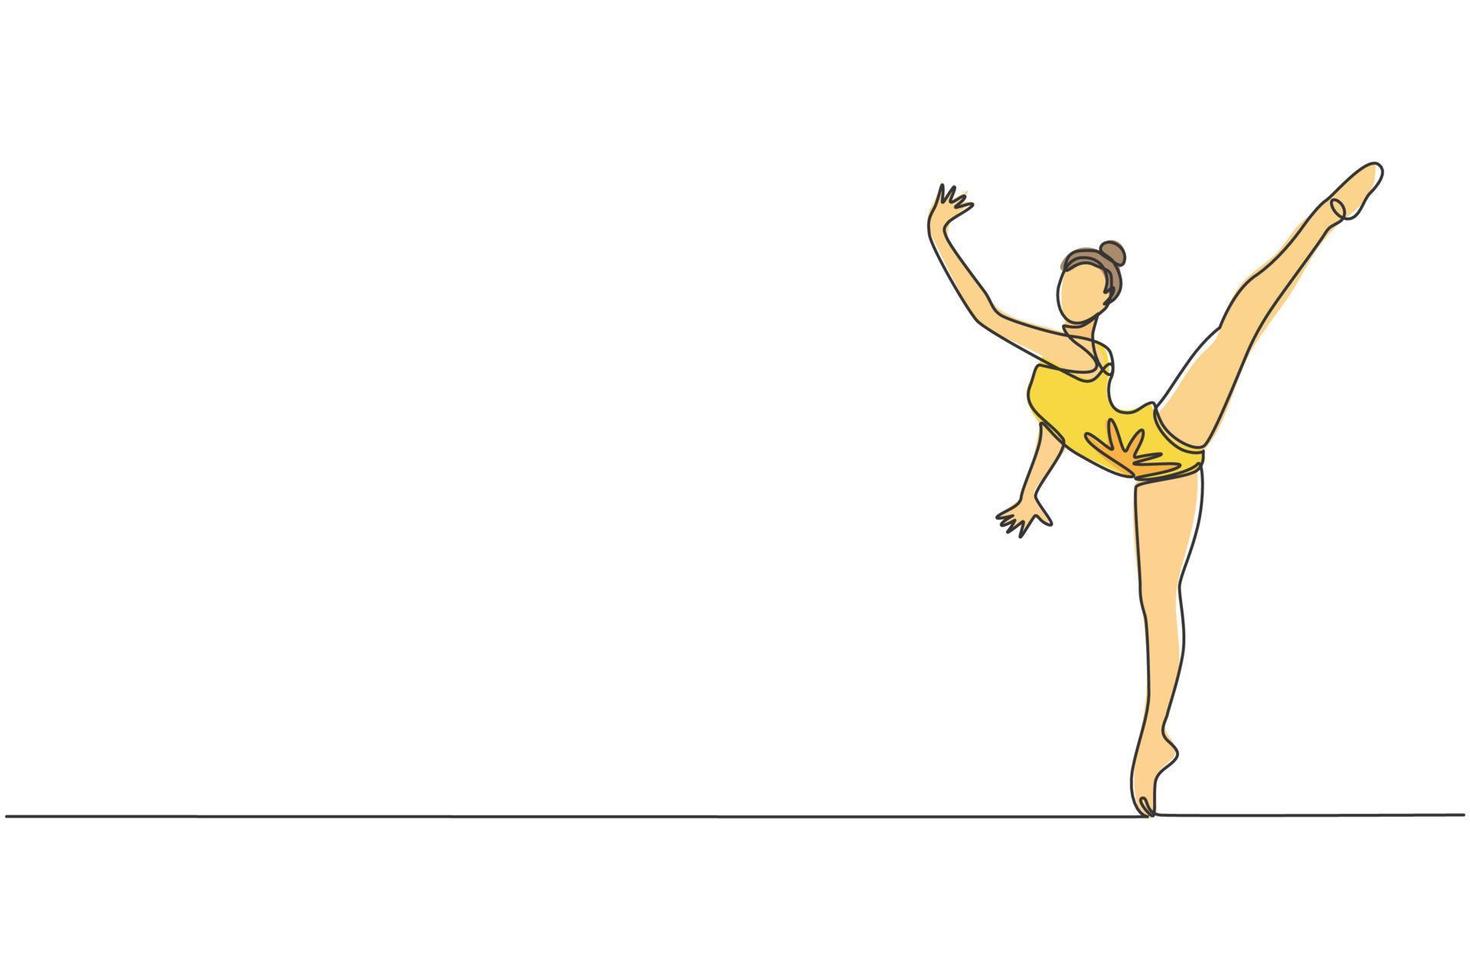 uno soltero línea dibujo de joven belleza gimnasta niña ejercicio piso rítmico gimnástico a gimnasio vector ilustración. sano atleta adolescente estilo de vida y deporte concepto. moderno continuo línea dibujar diseño